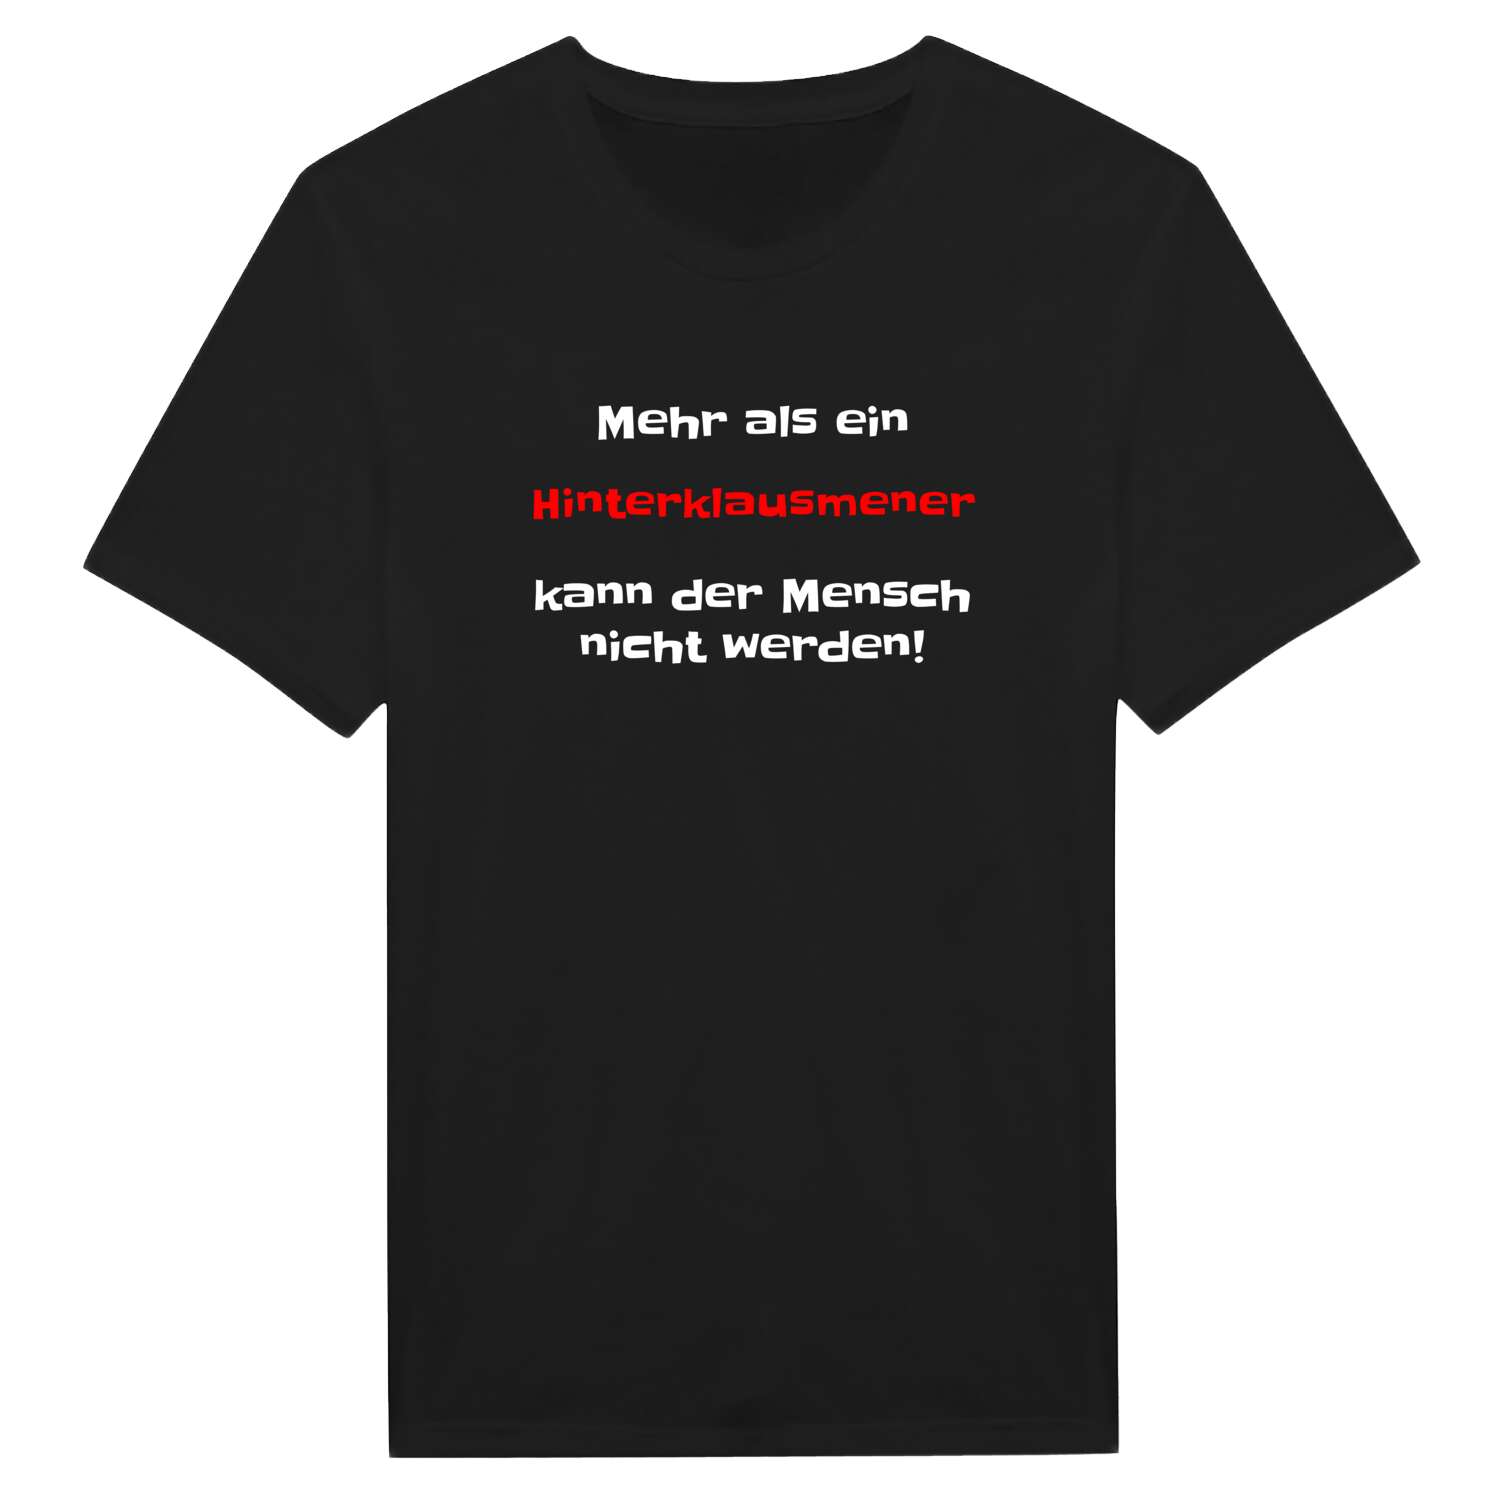 Hinterklausmen T-Shirt »Mehr als ein«